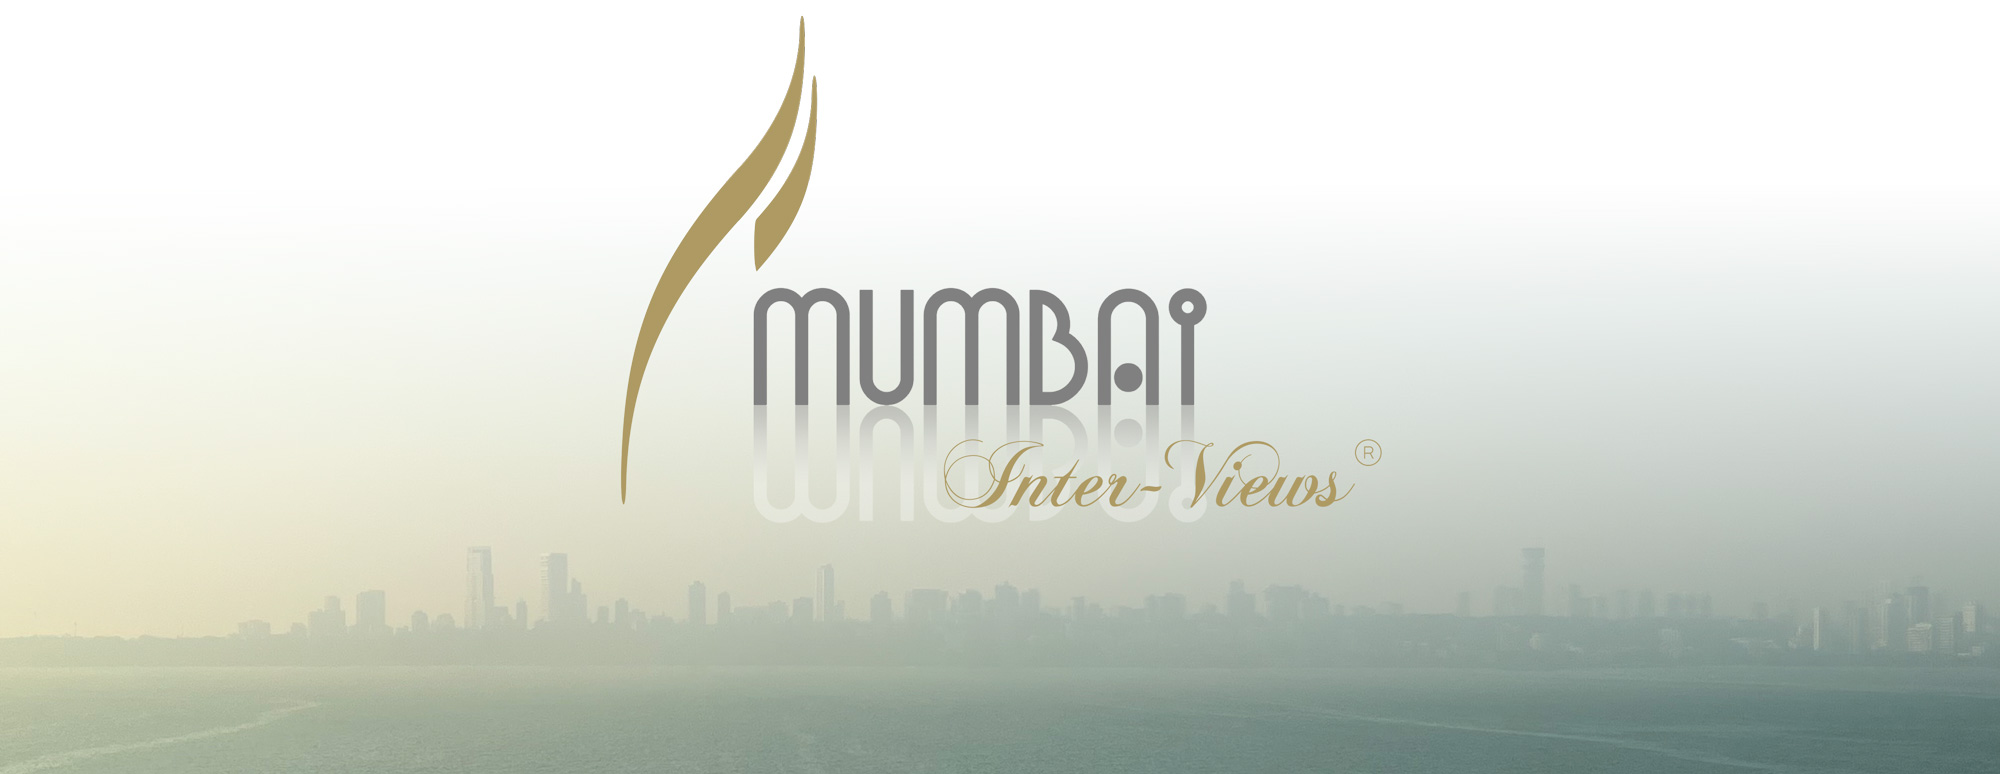 Les Entretiens de Mumbai